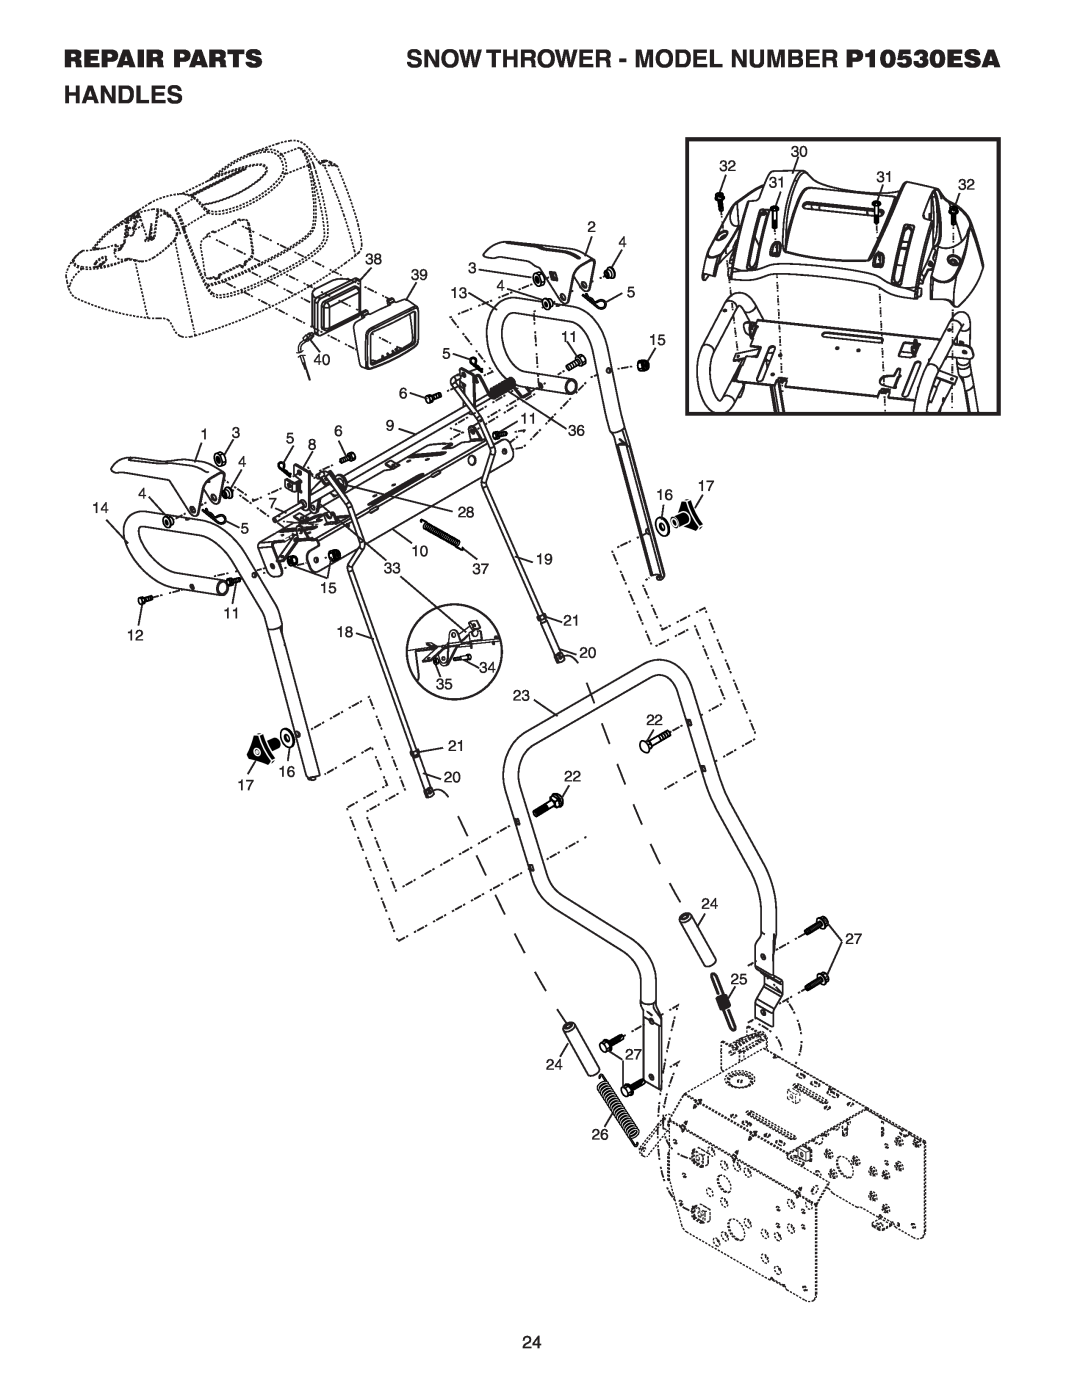 Poulan 185136 owner manual Handles, Repair Parts, SNOW THROWER - MODEL NUMBER P10530ESA 